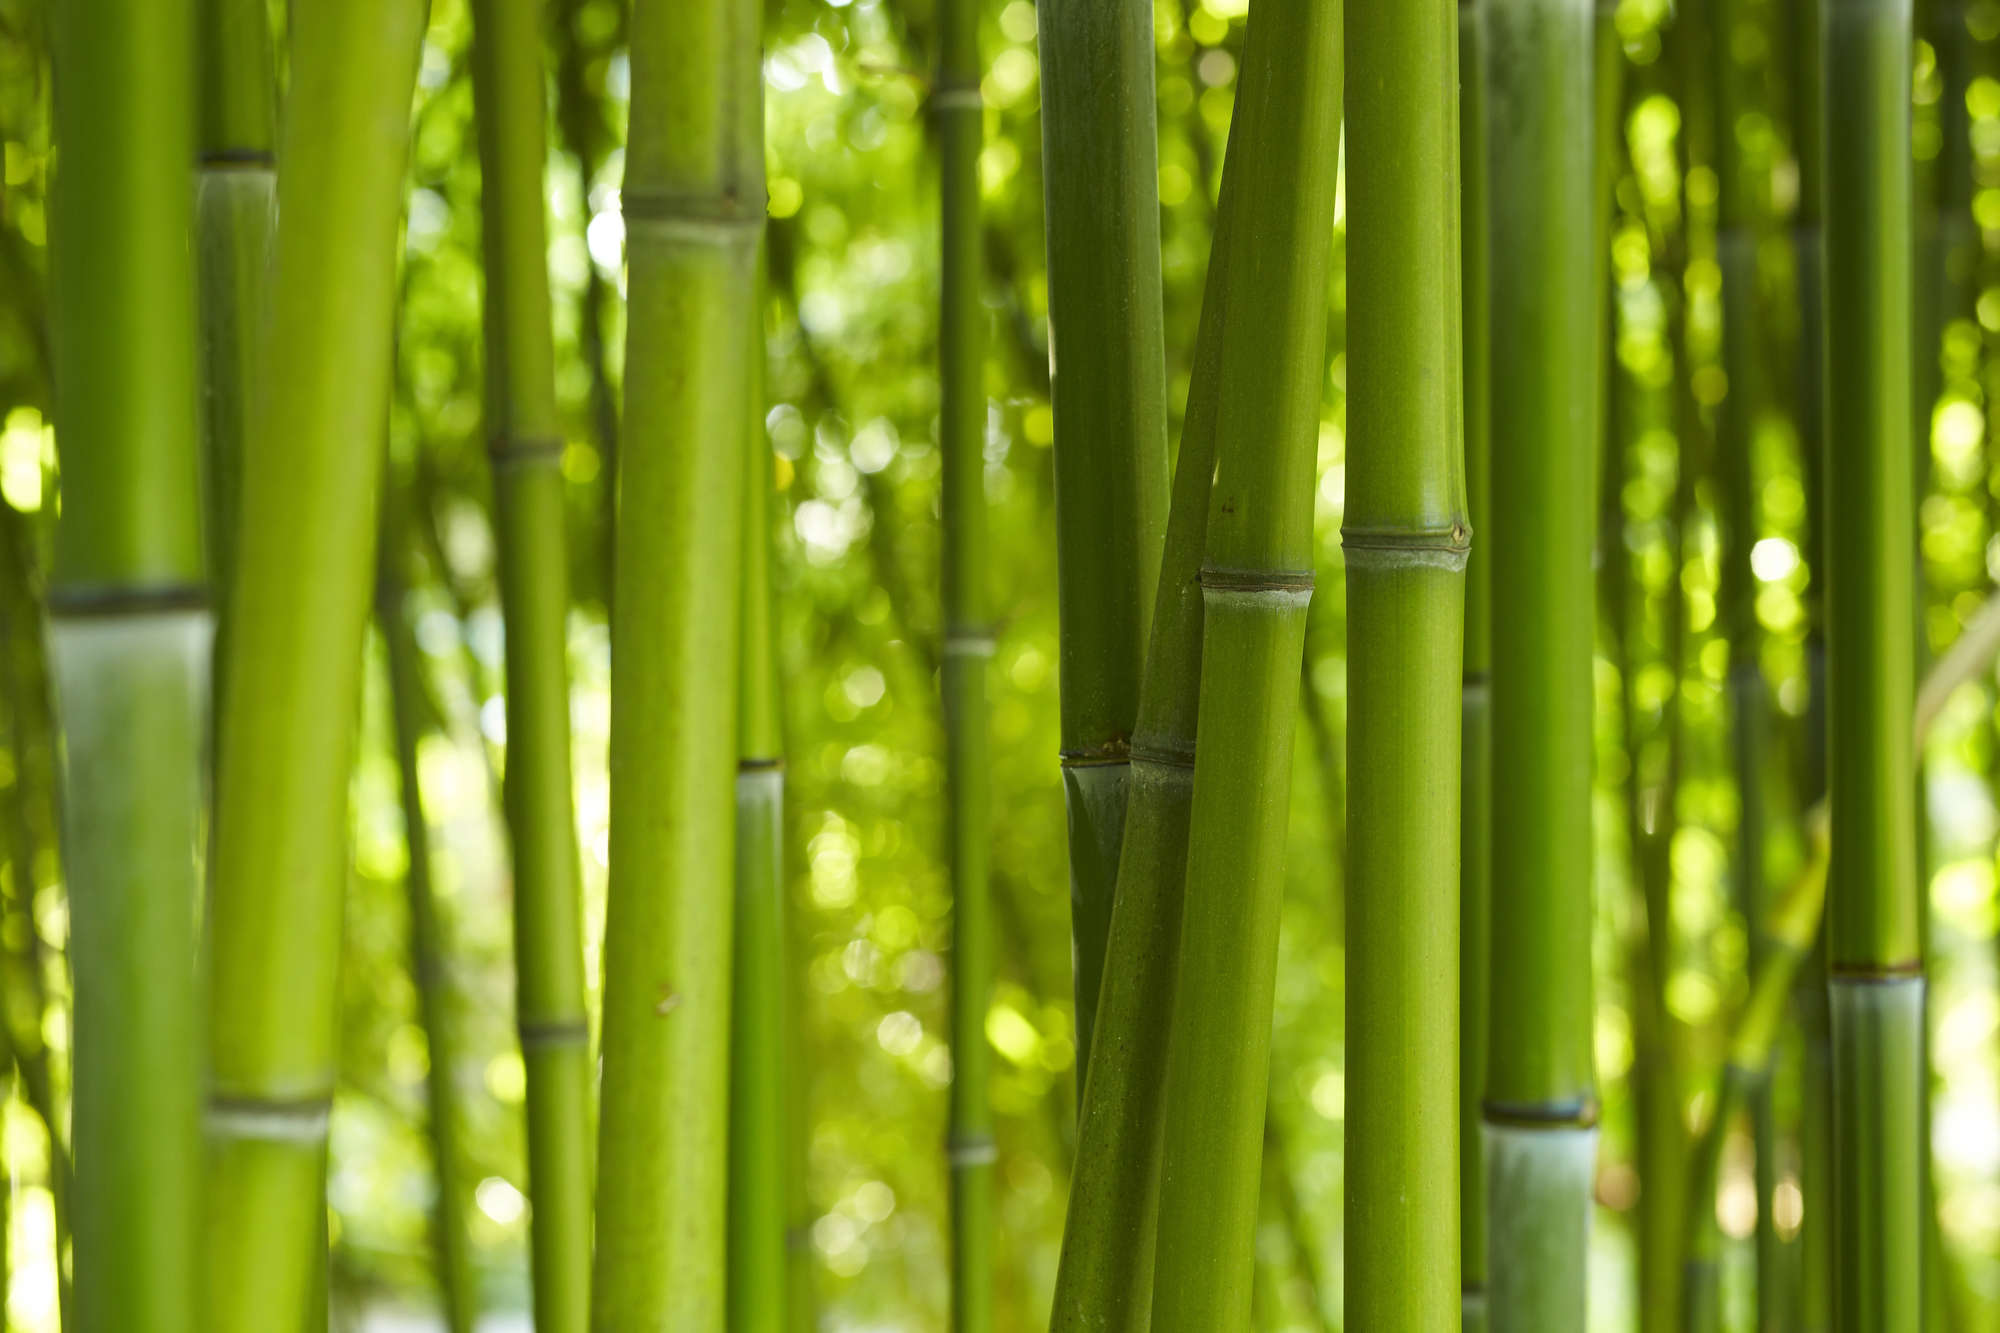             Natur Fototapete Bambus Nahaufnahme auf Perlmutt Glattvlies
        